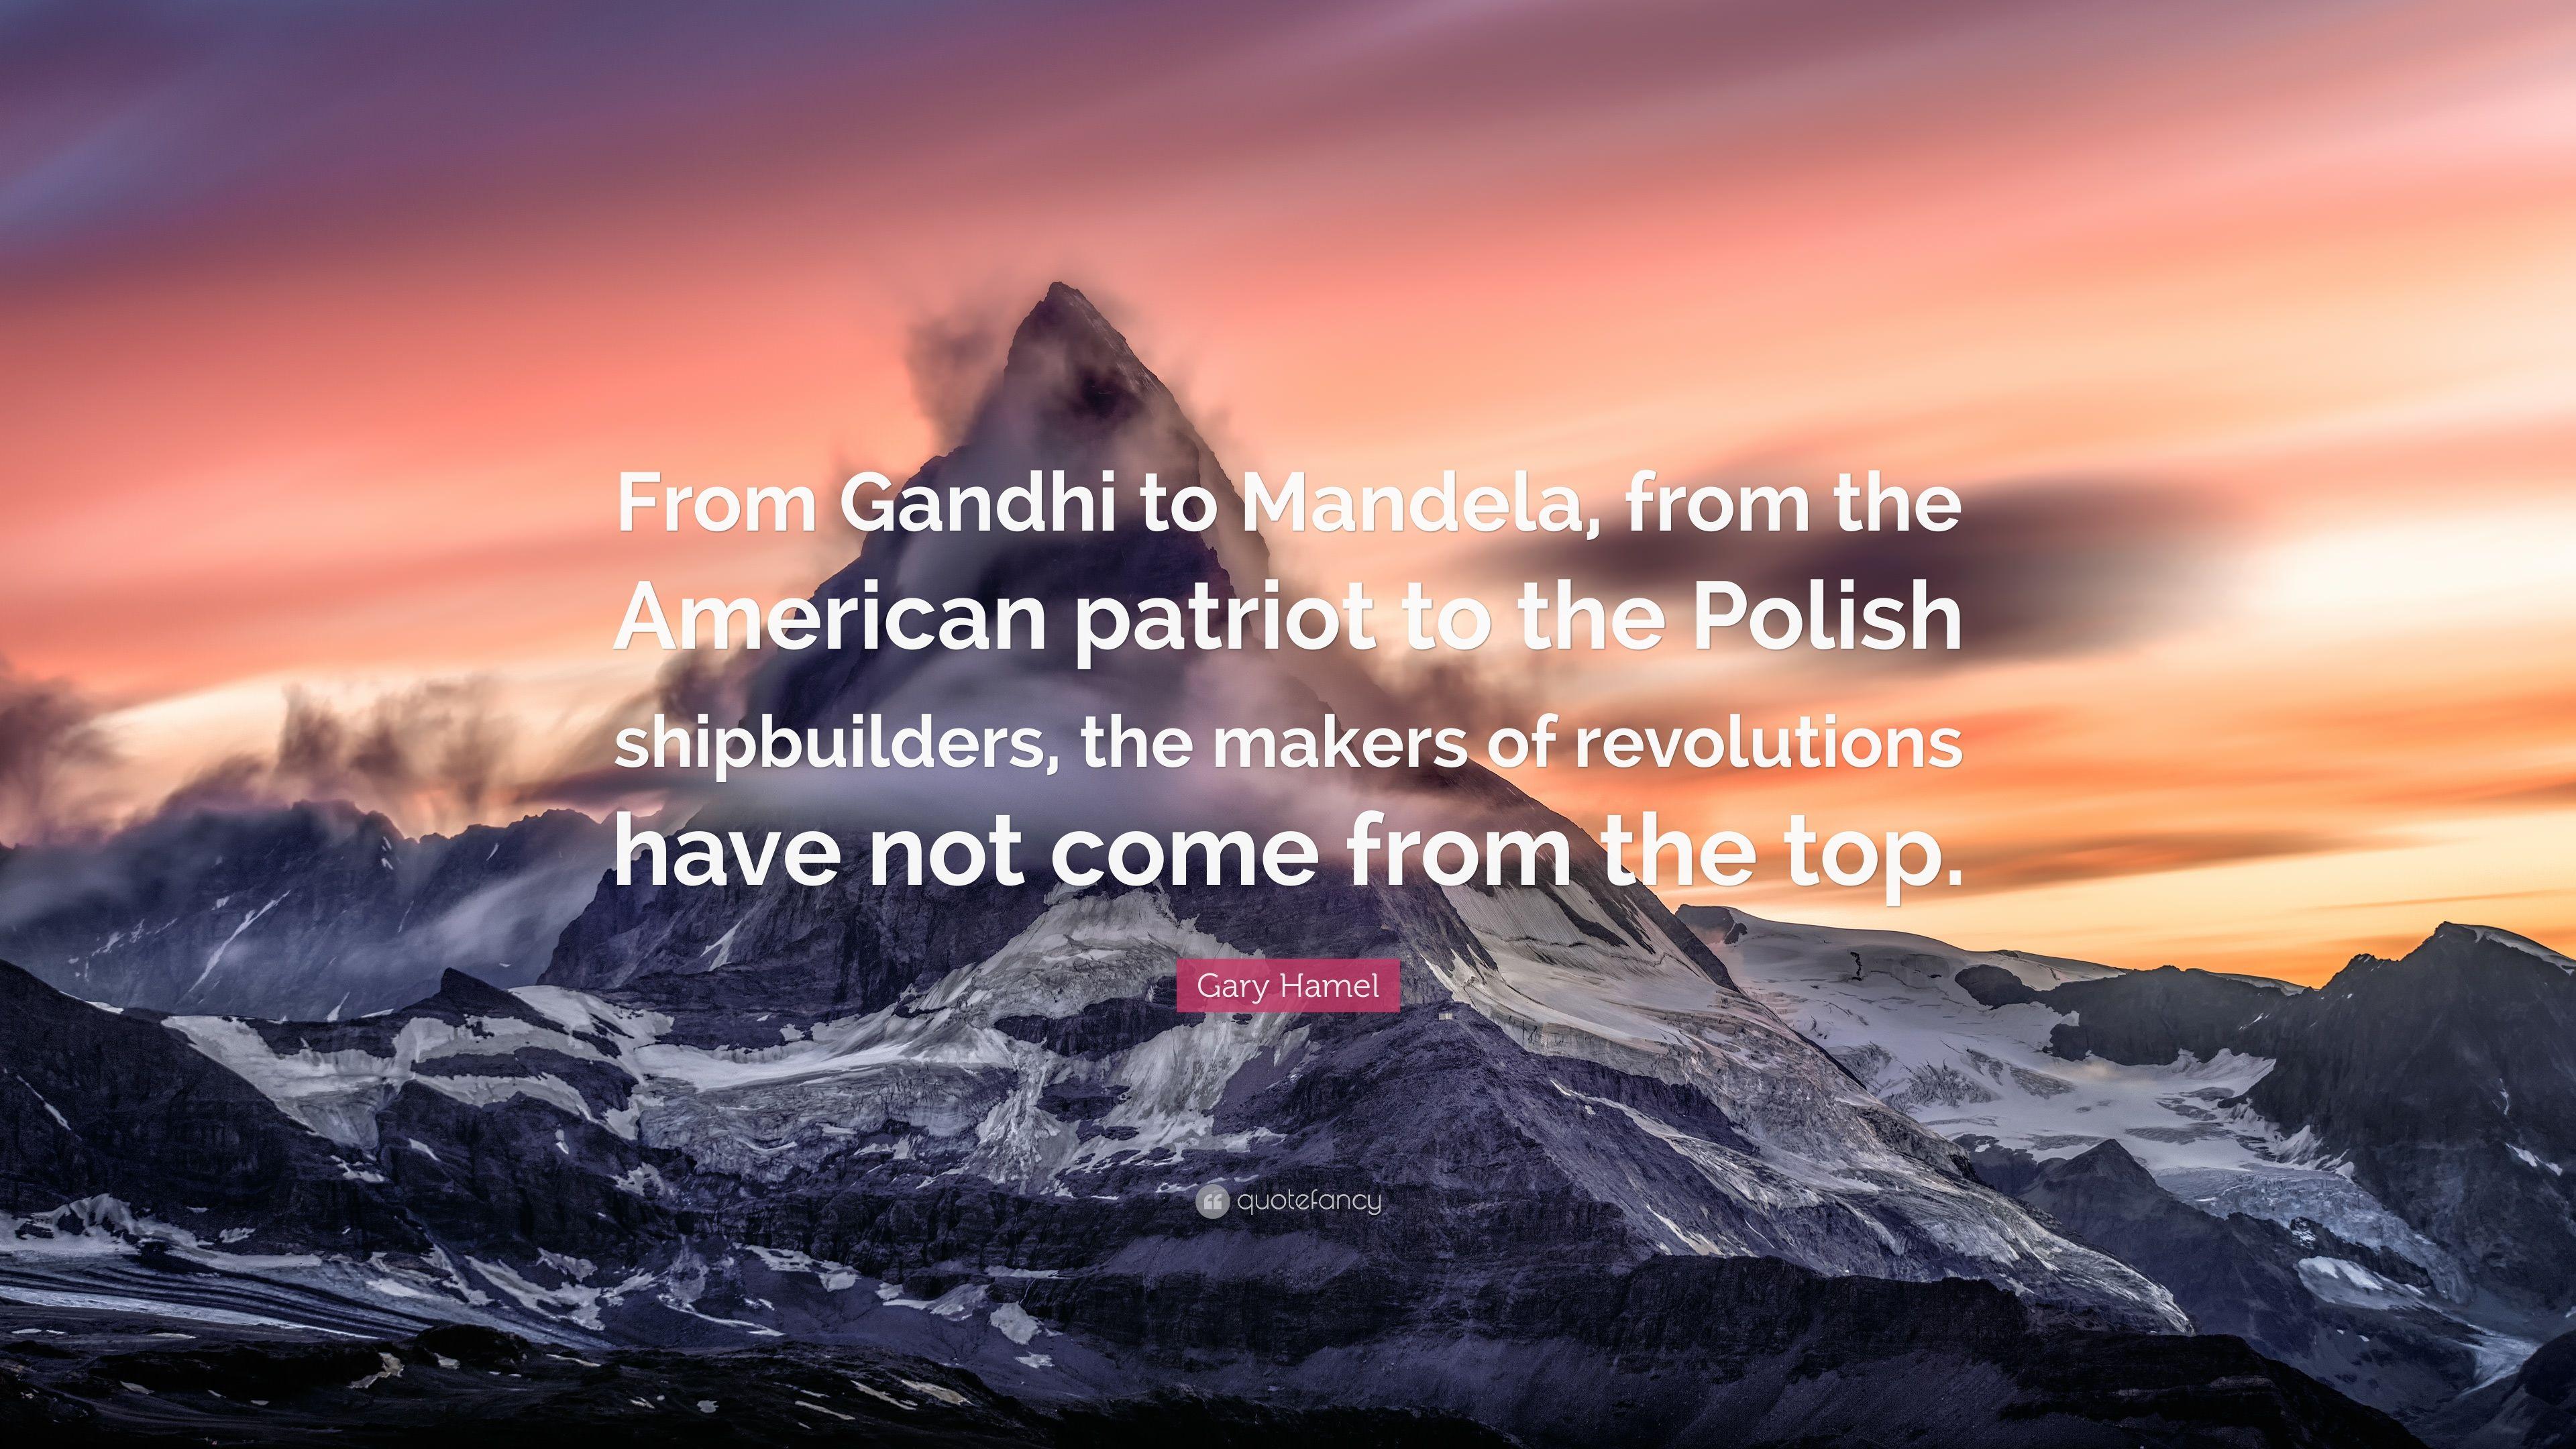 3840x2160 Gary Hamel Trích dẫn: “Từ Gandhi đến Mandela, từ người yêu nước Mỹ